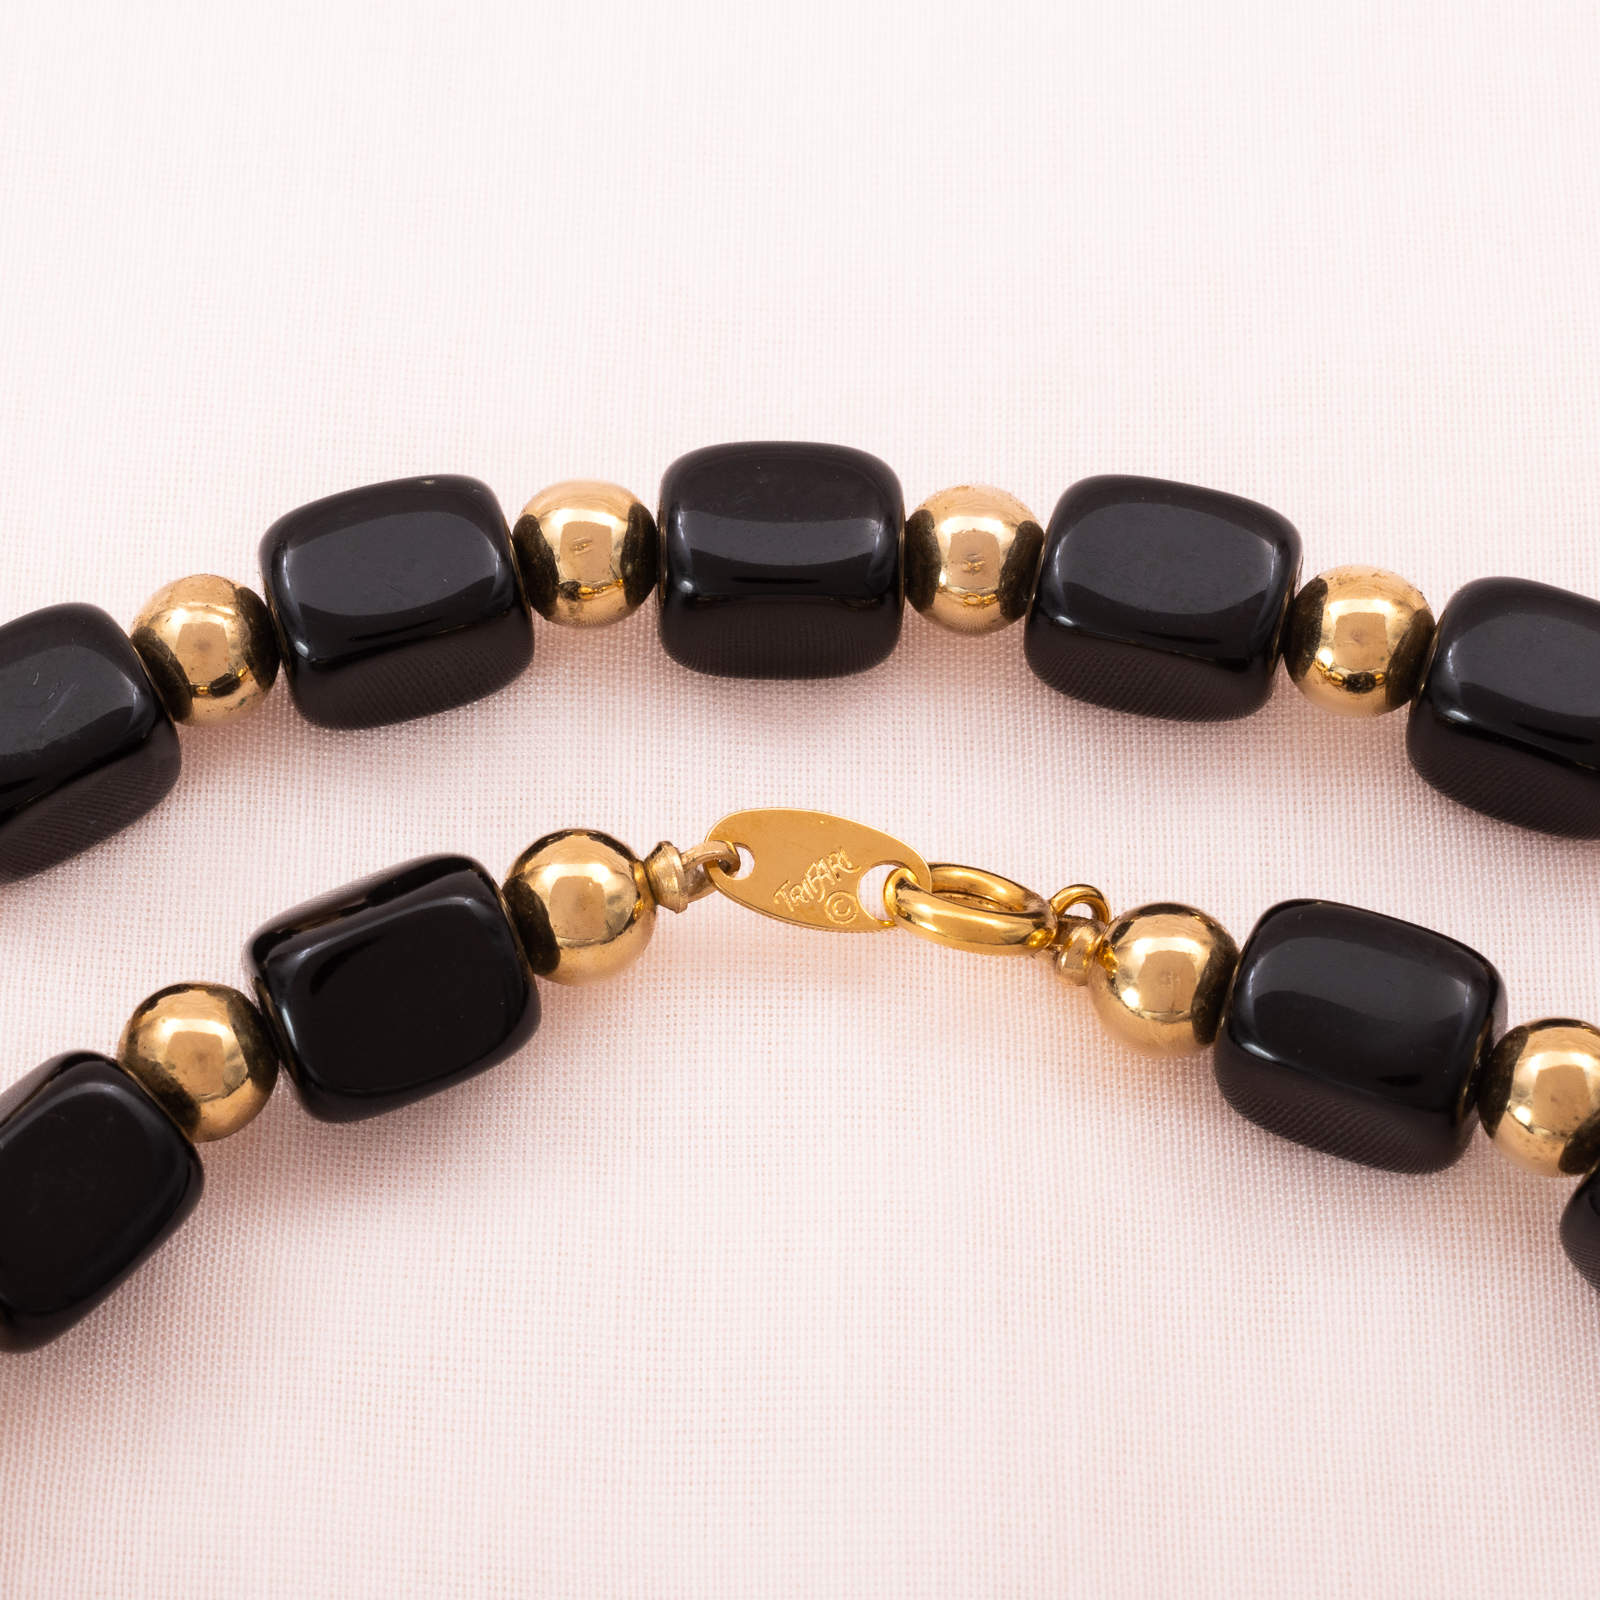 Trifari-Halskette-eckige-schwarze-Kunststoff-Perlen-80er-Jahre-Verschluss-Signatur